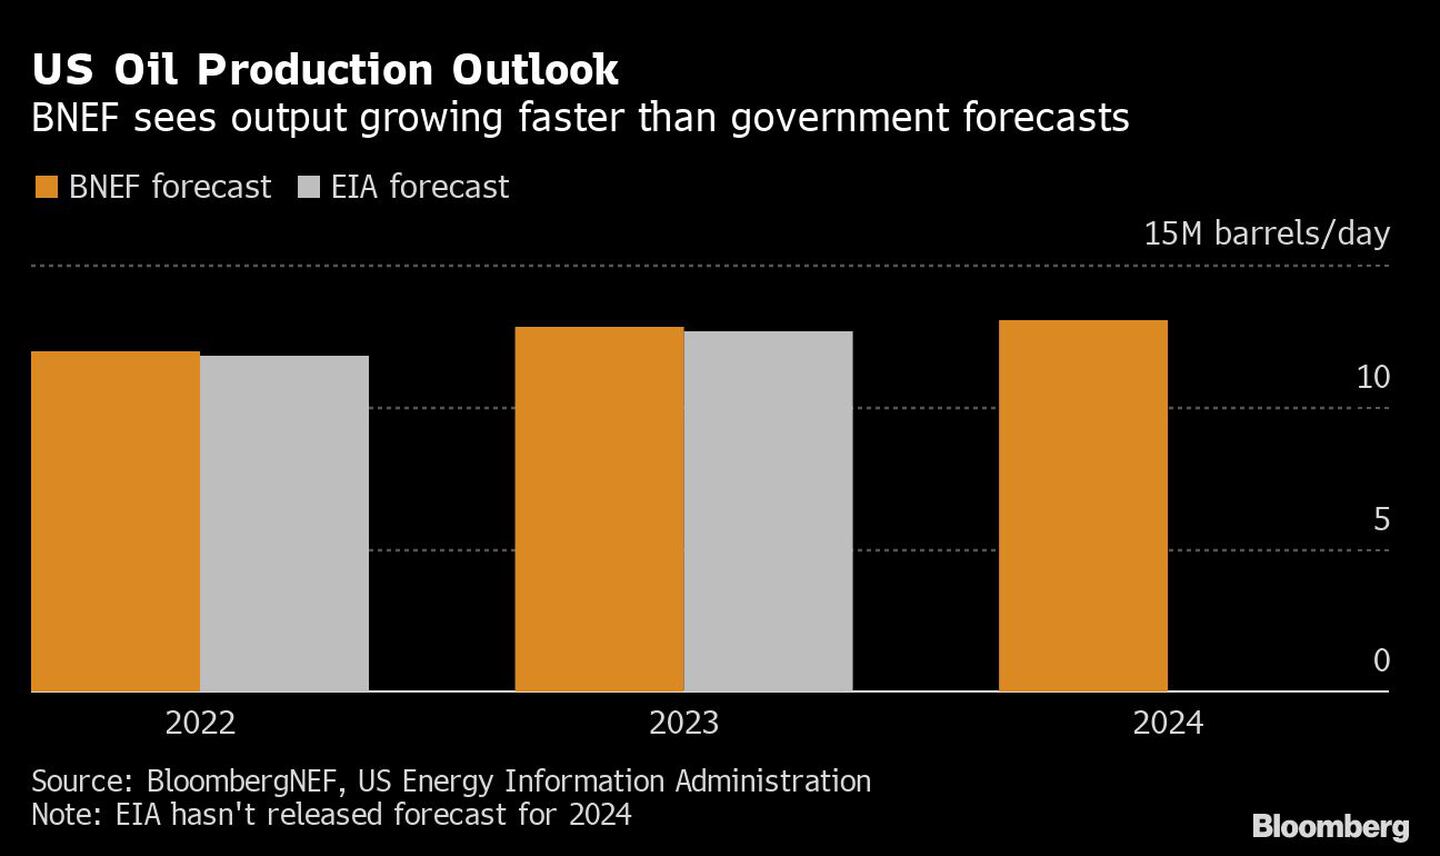 Perspectivas de la producción de petróleo en EE.UU. | BNEF ve que la producción crece más rápido que las previsiones del gobierno
dfd